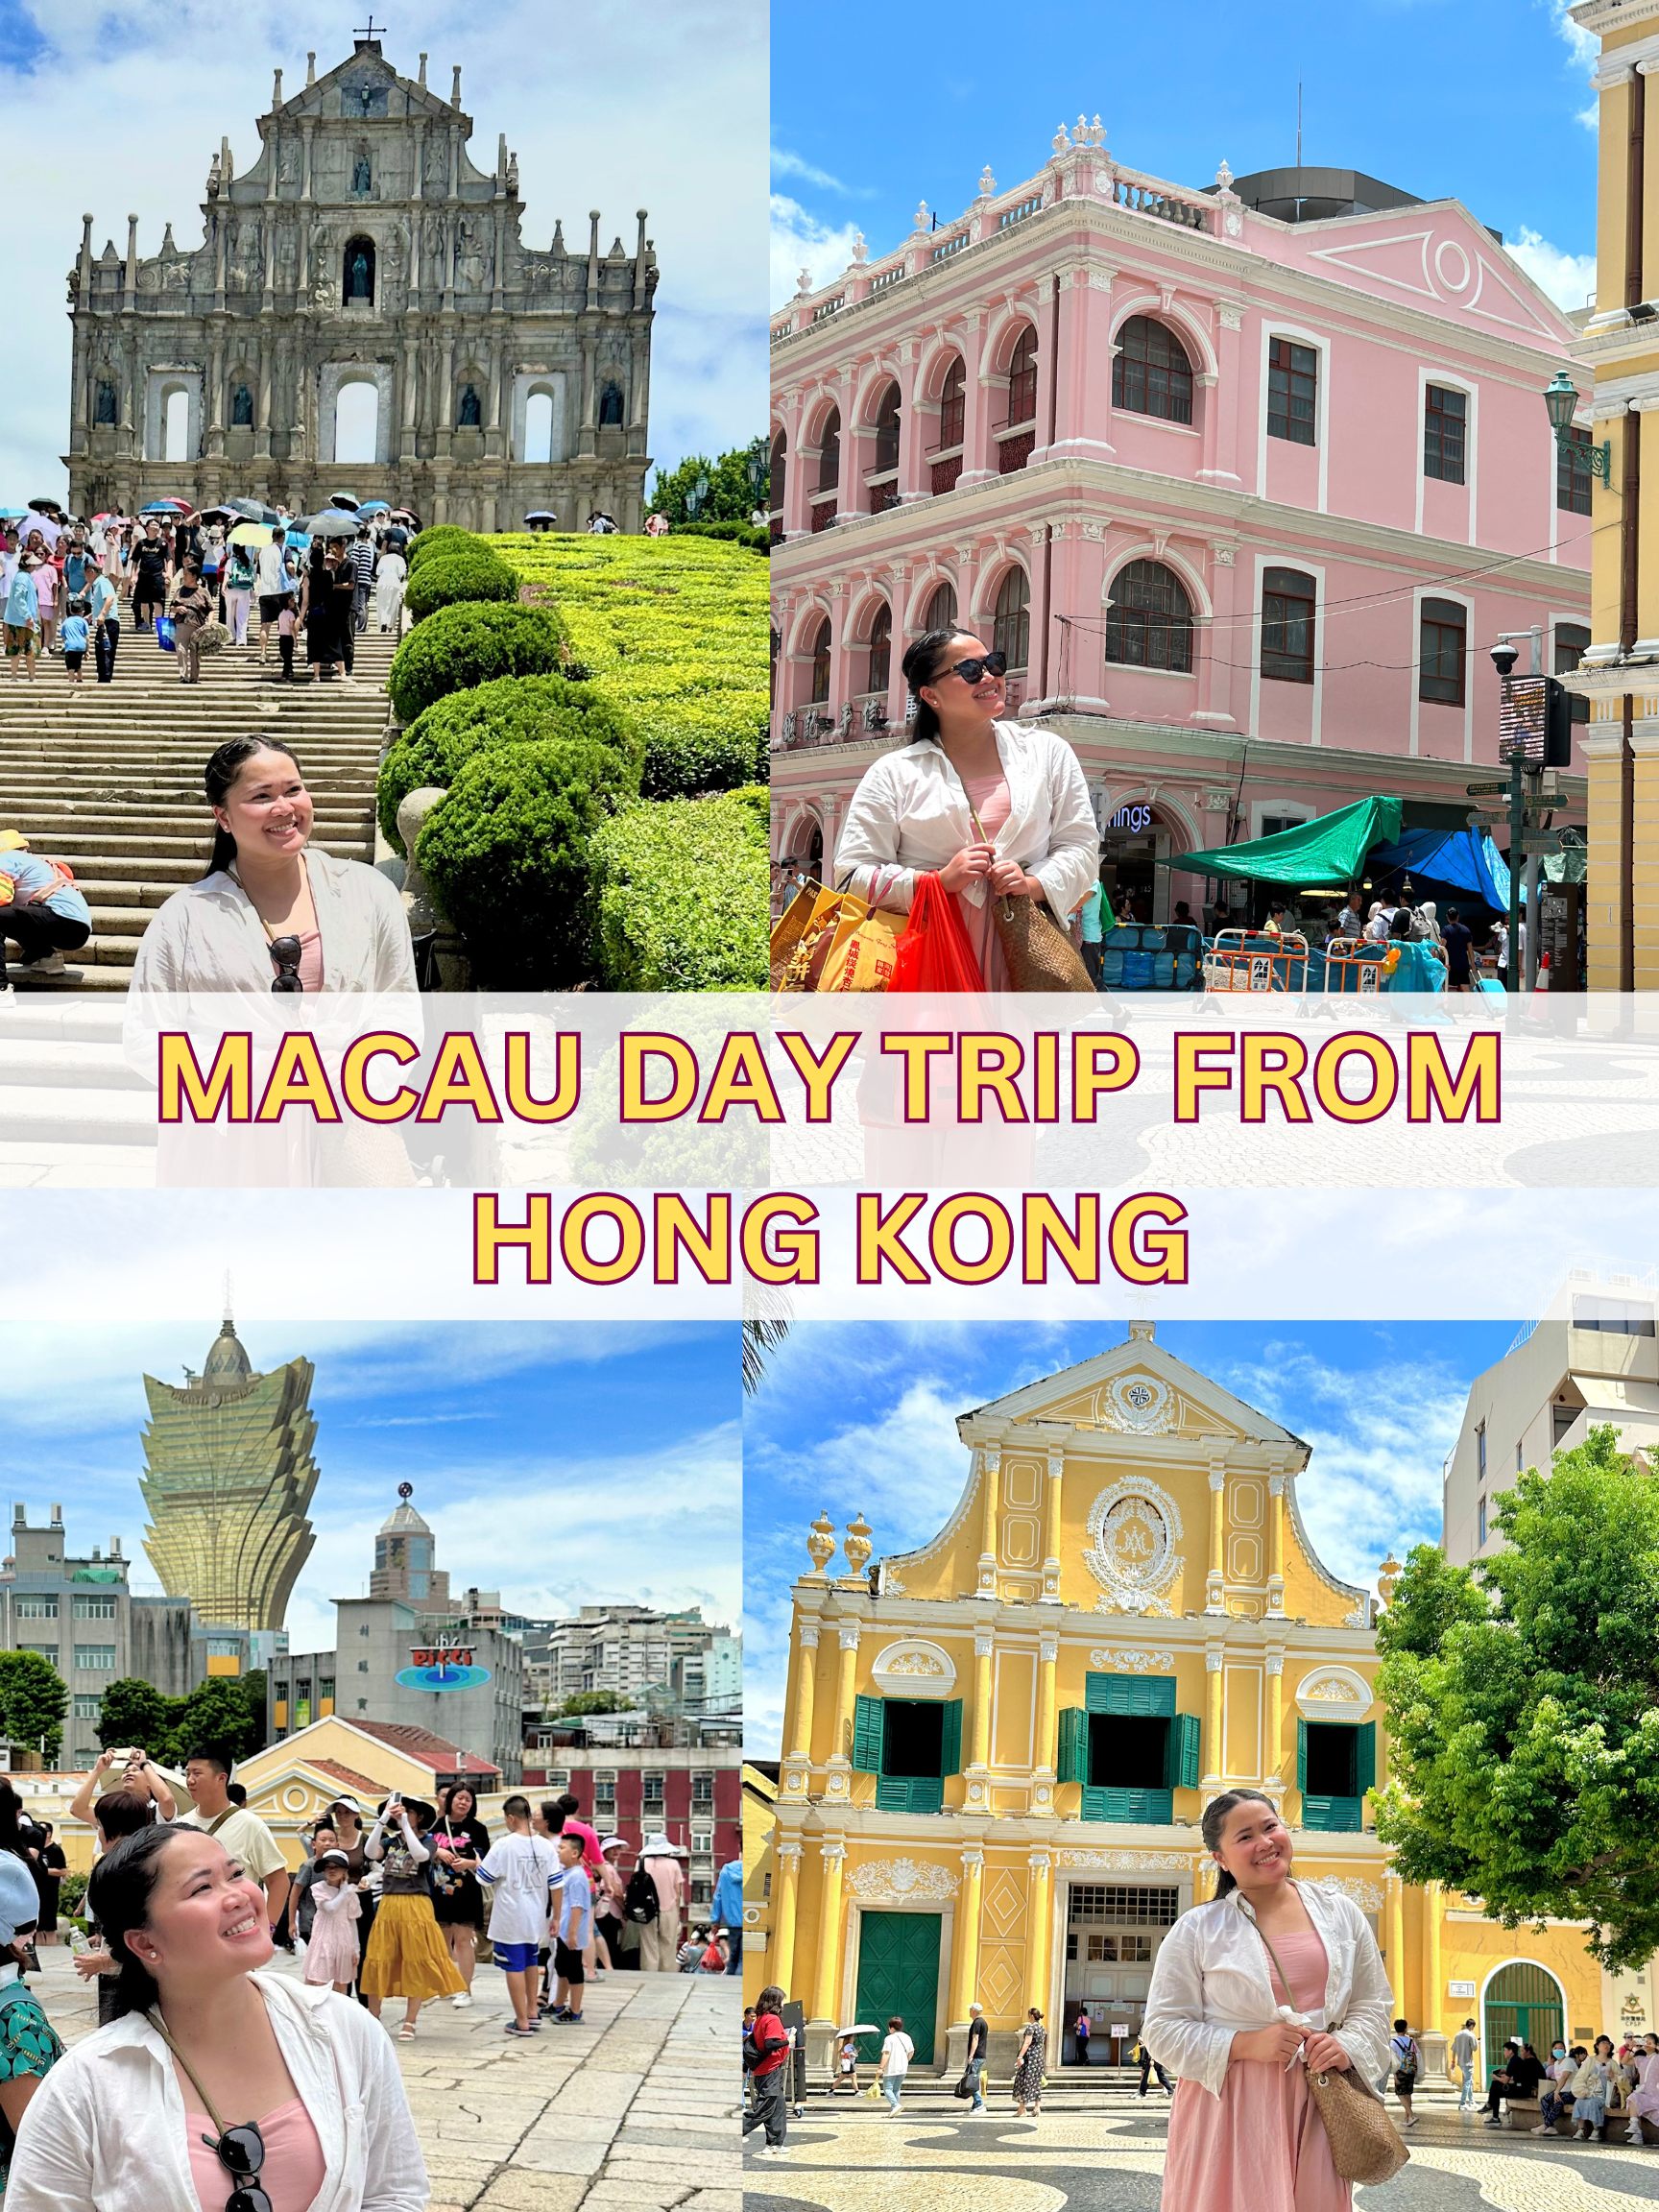 Macau Day Trip from Hong Kong